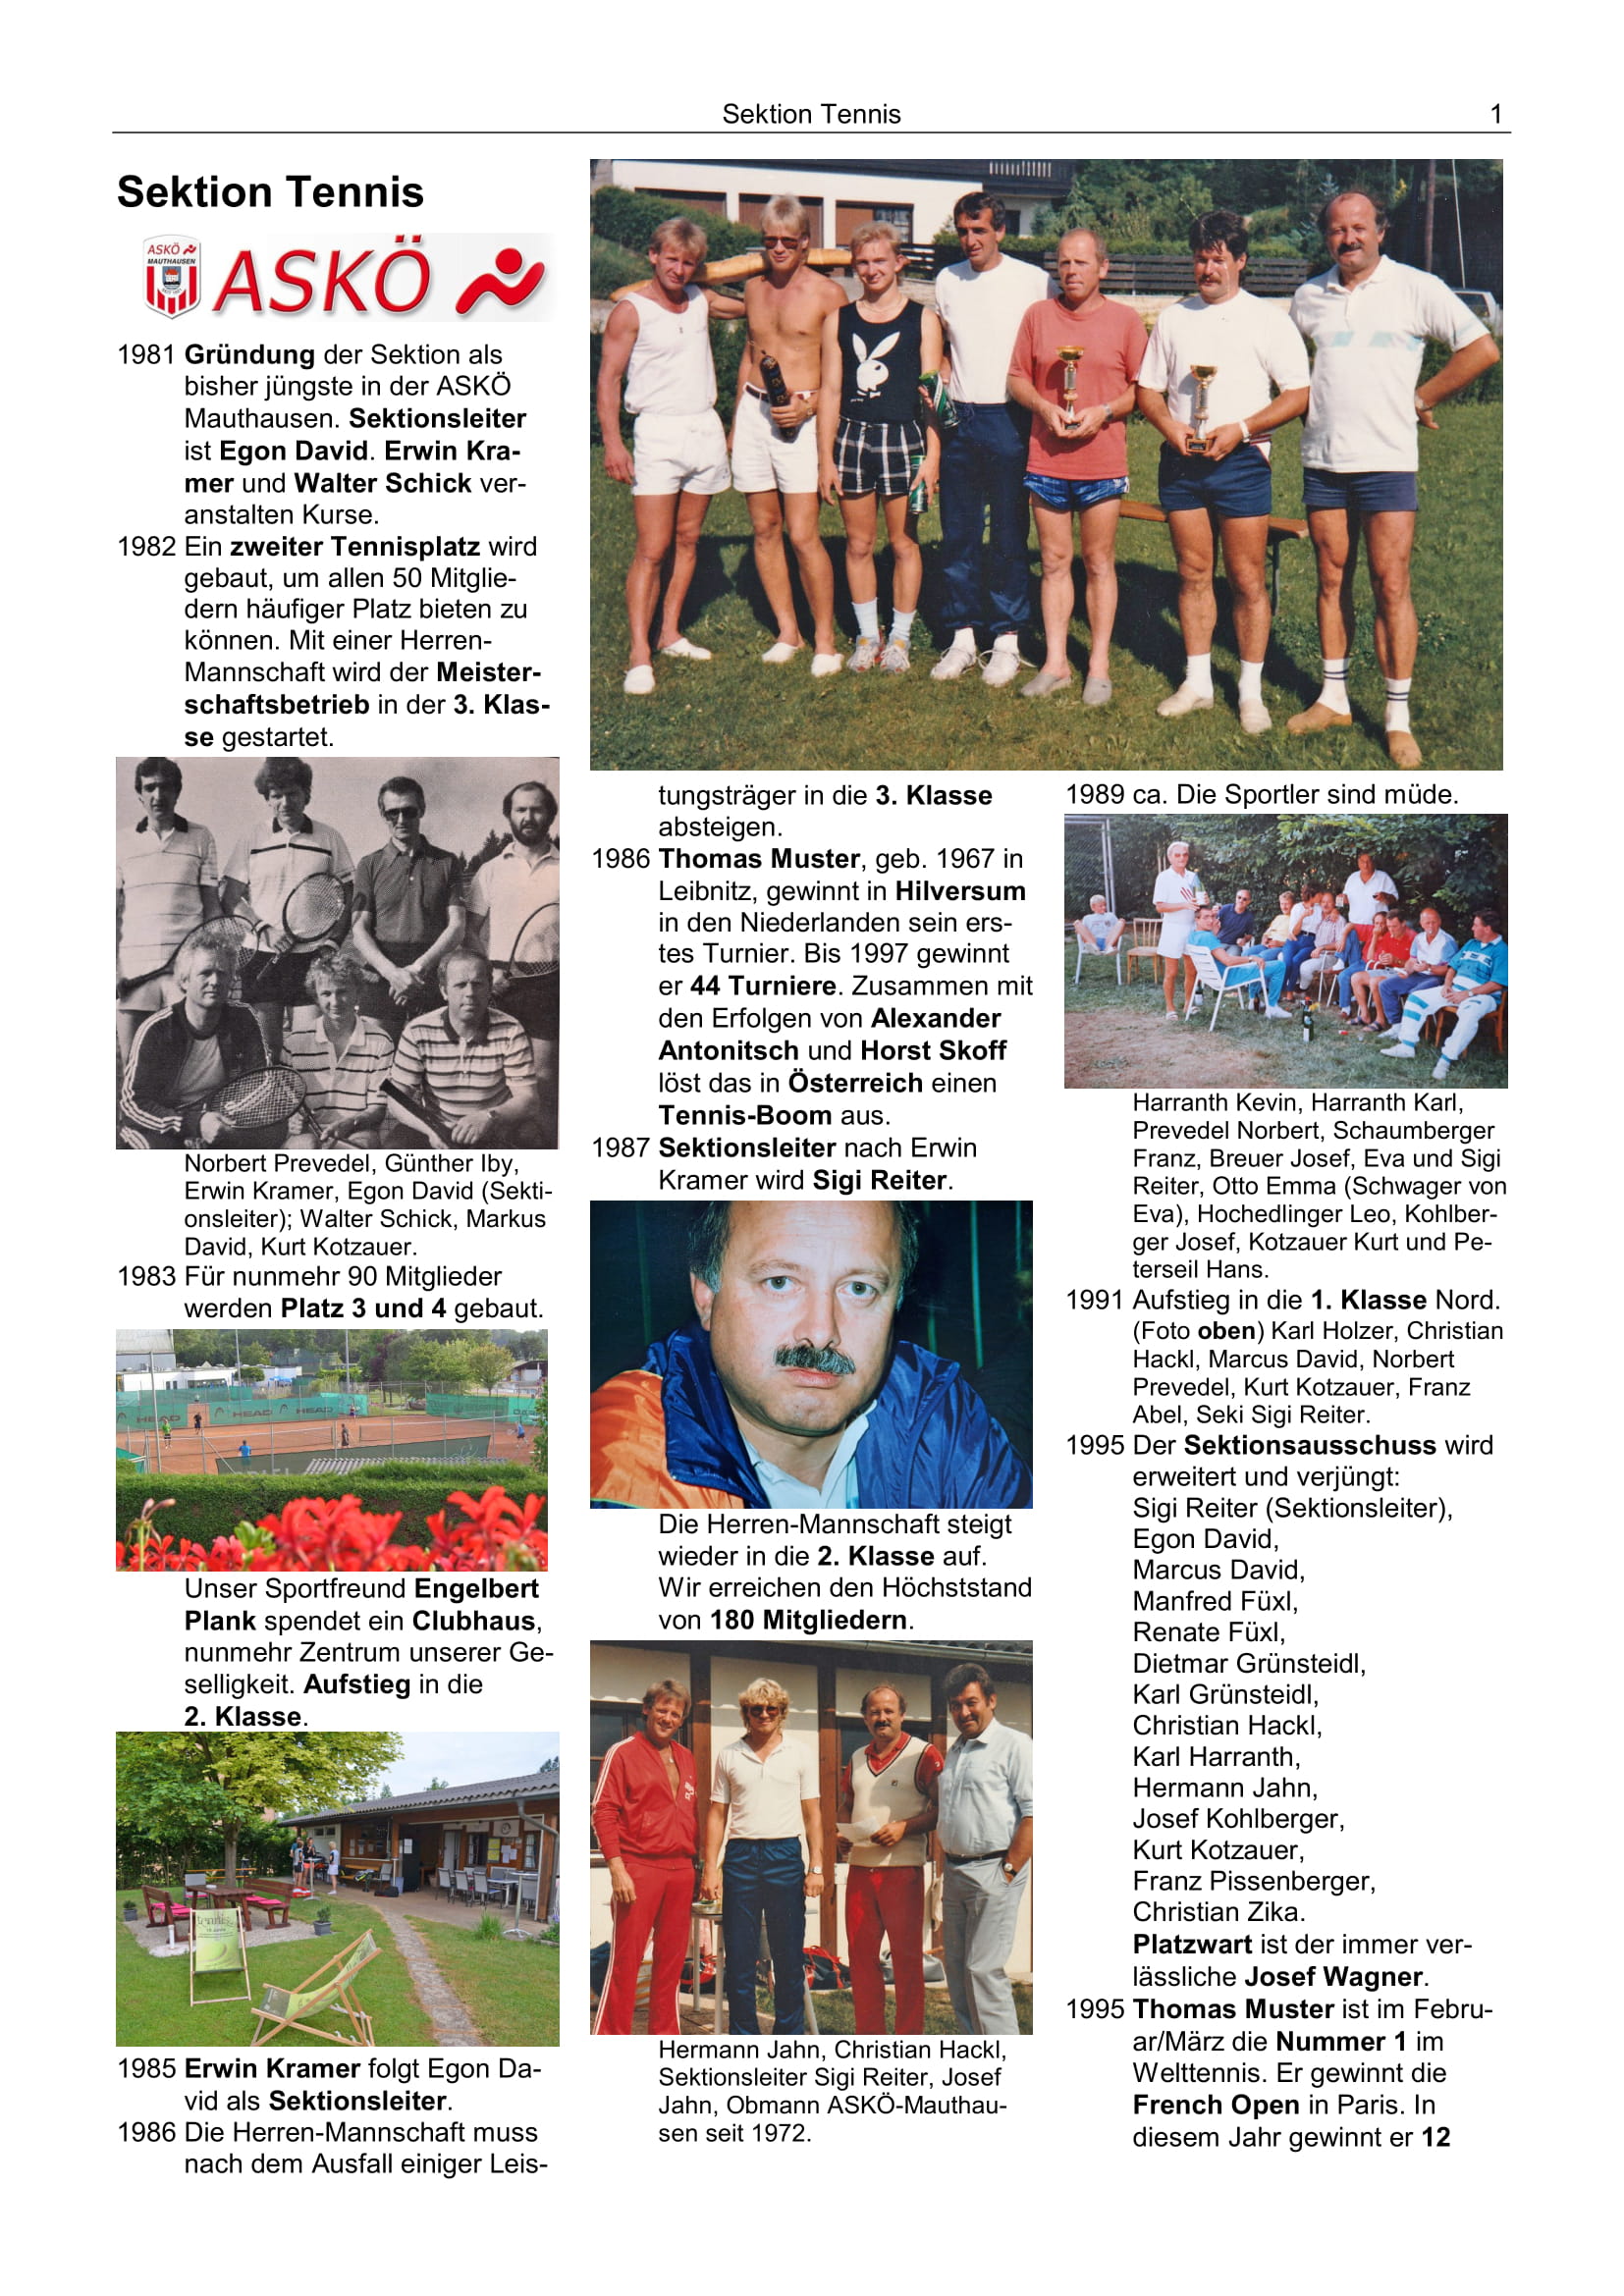 100 Jahre ASKÖ Sektion Tennis gegründet 1981 1